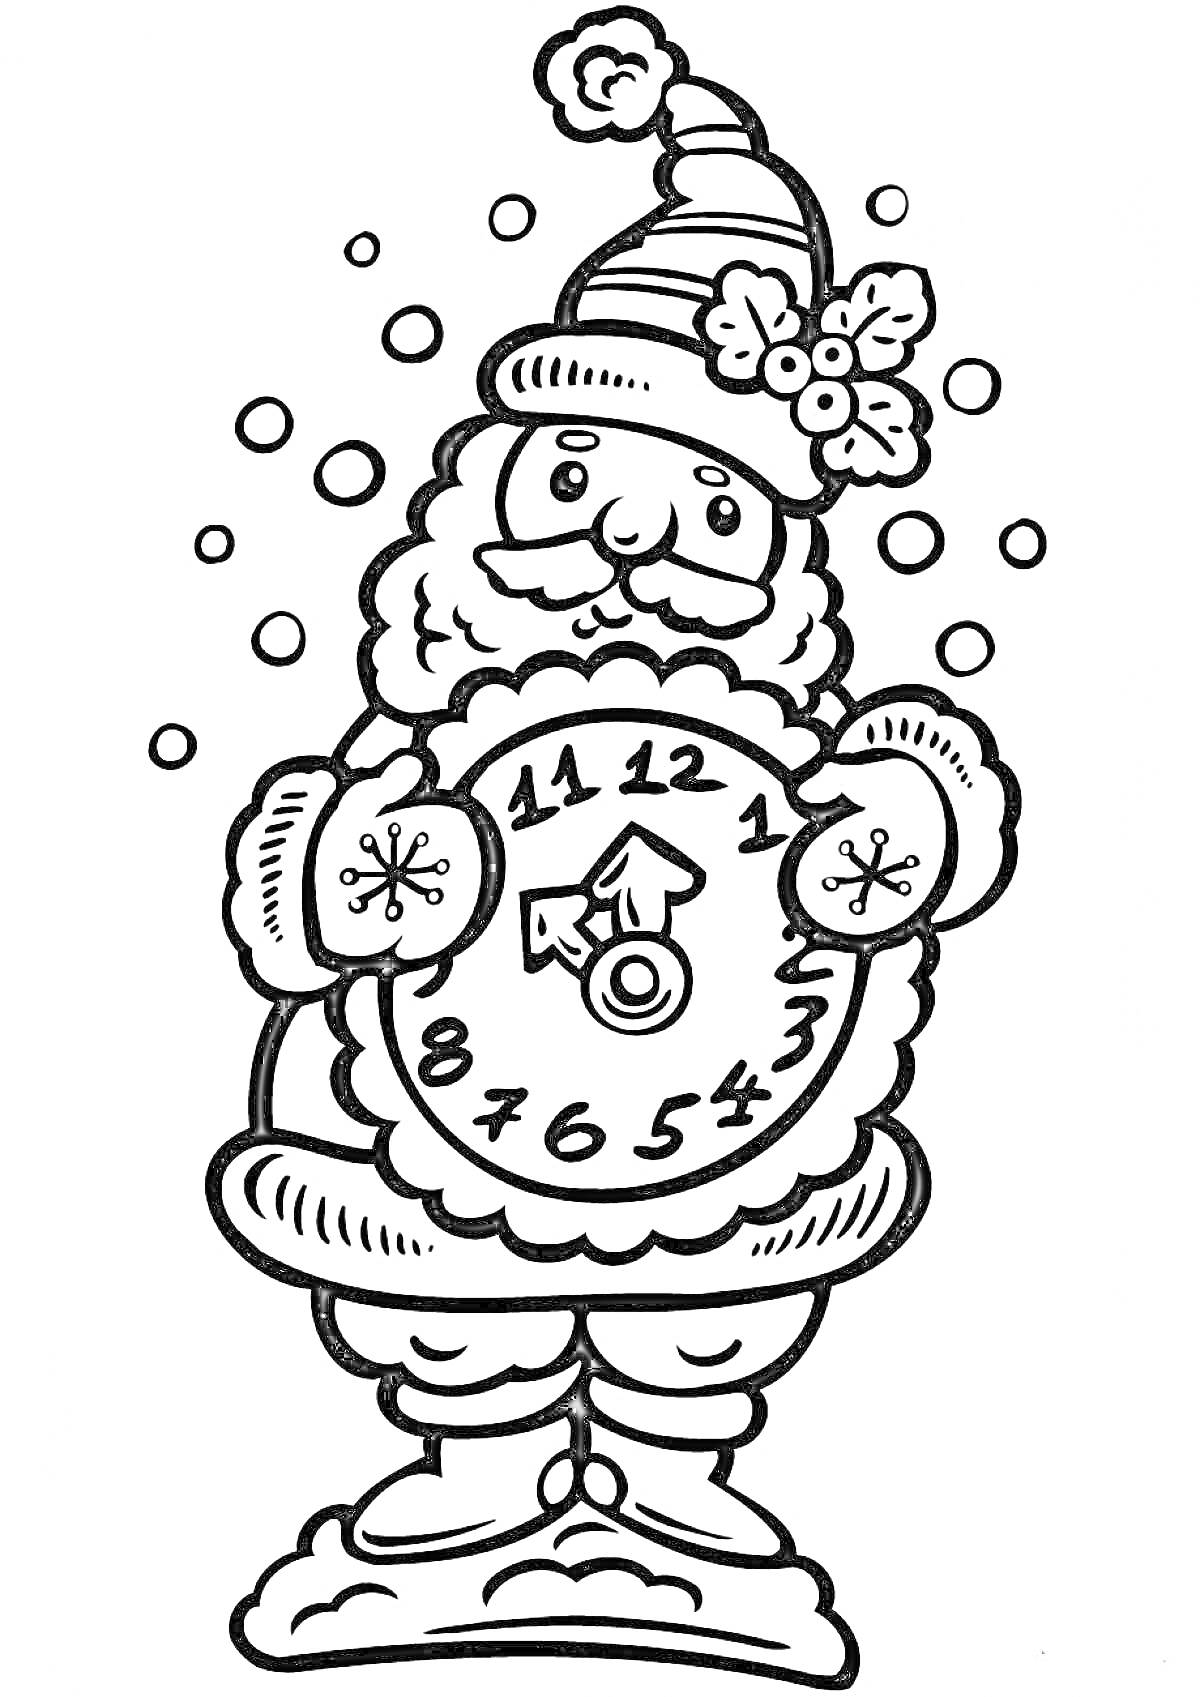 Дед Мороз с часами, снежинки, шапка с бубоном и веточкой остролиста, крупные пуговицы, падающий снег